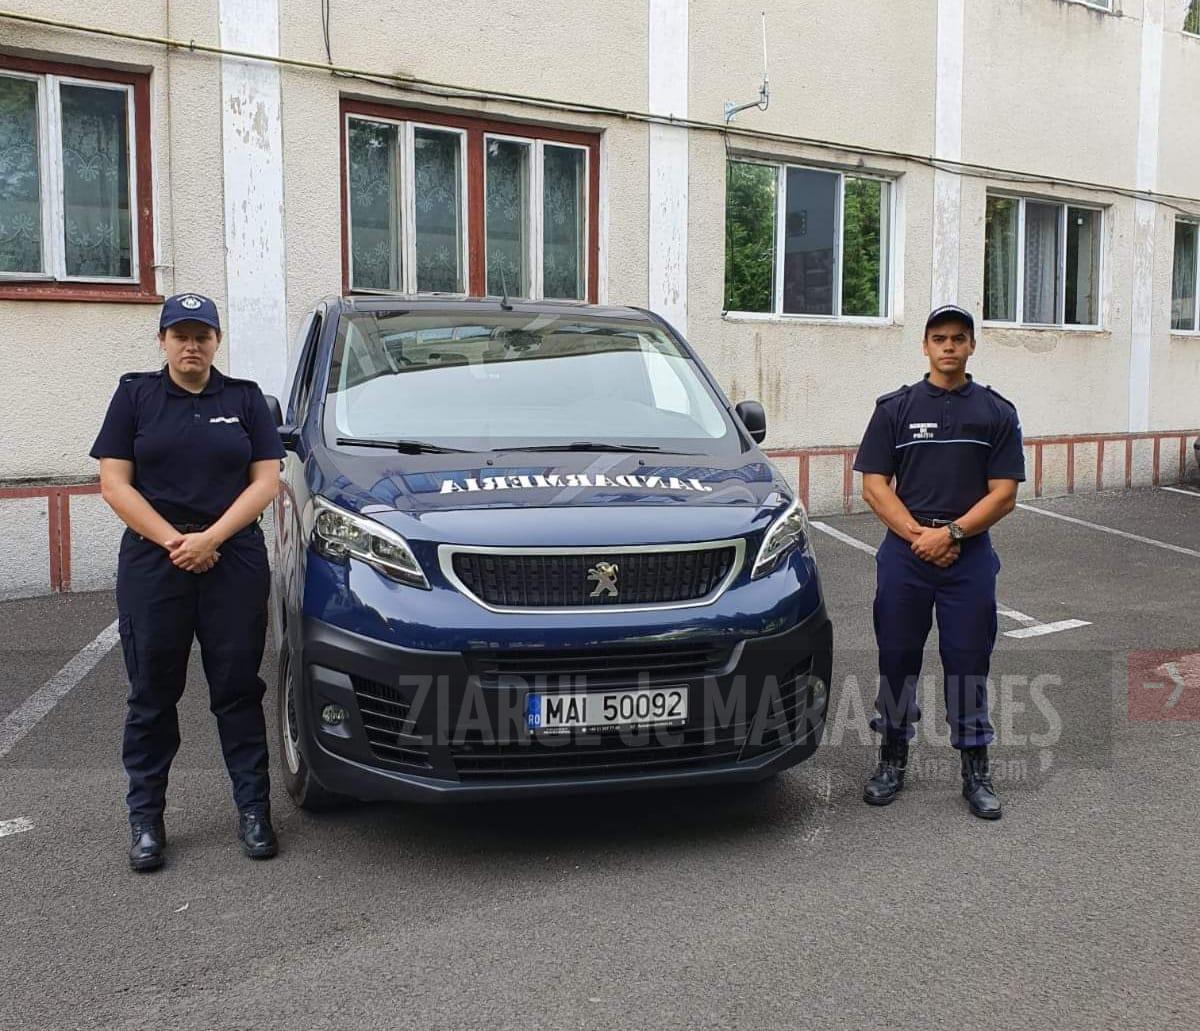 Jandarmii maramureșeni sunt prezenți la Street Delivery din Parcul Dacia